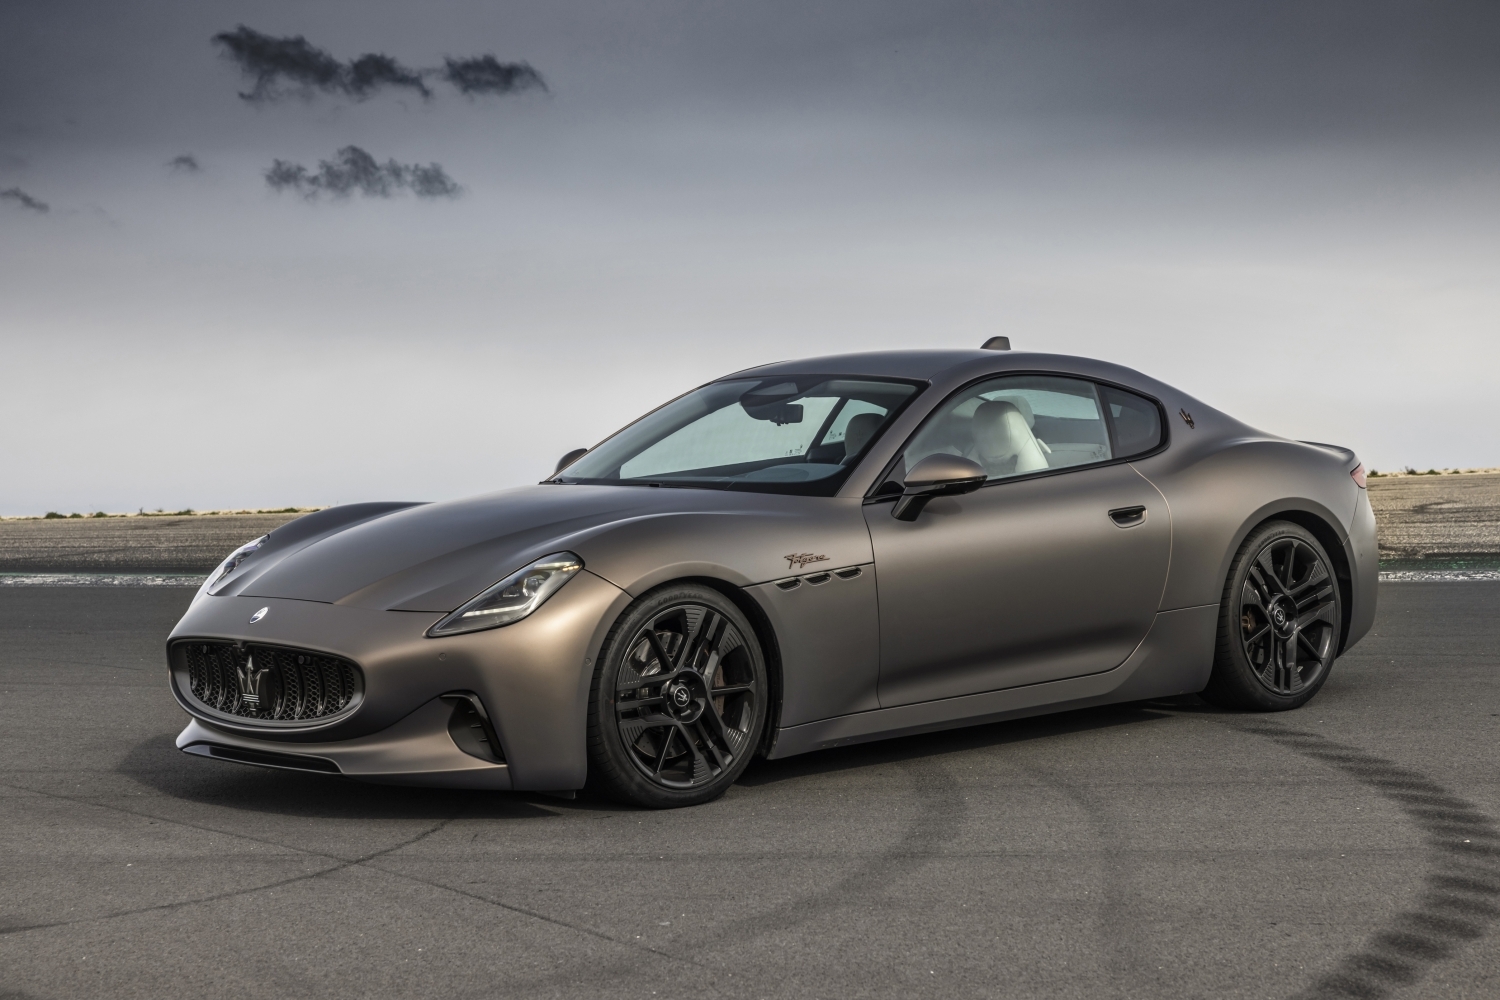 13_參展陣容還有全新 GranTurismo Folgore，讓現場與會者得以近距離欣賞 Maserati 首款純電車型.jpg